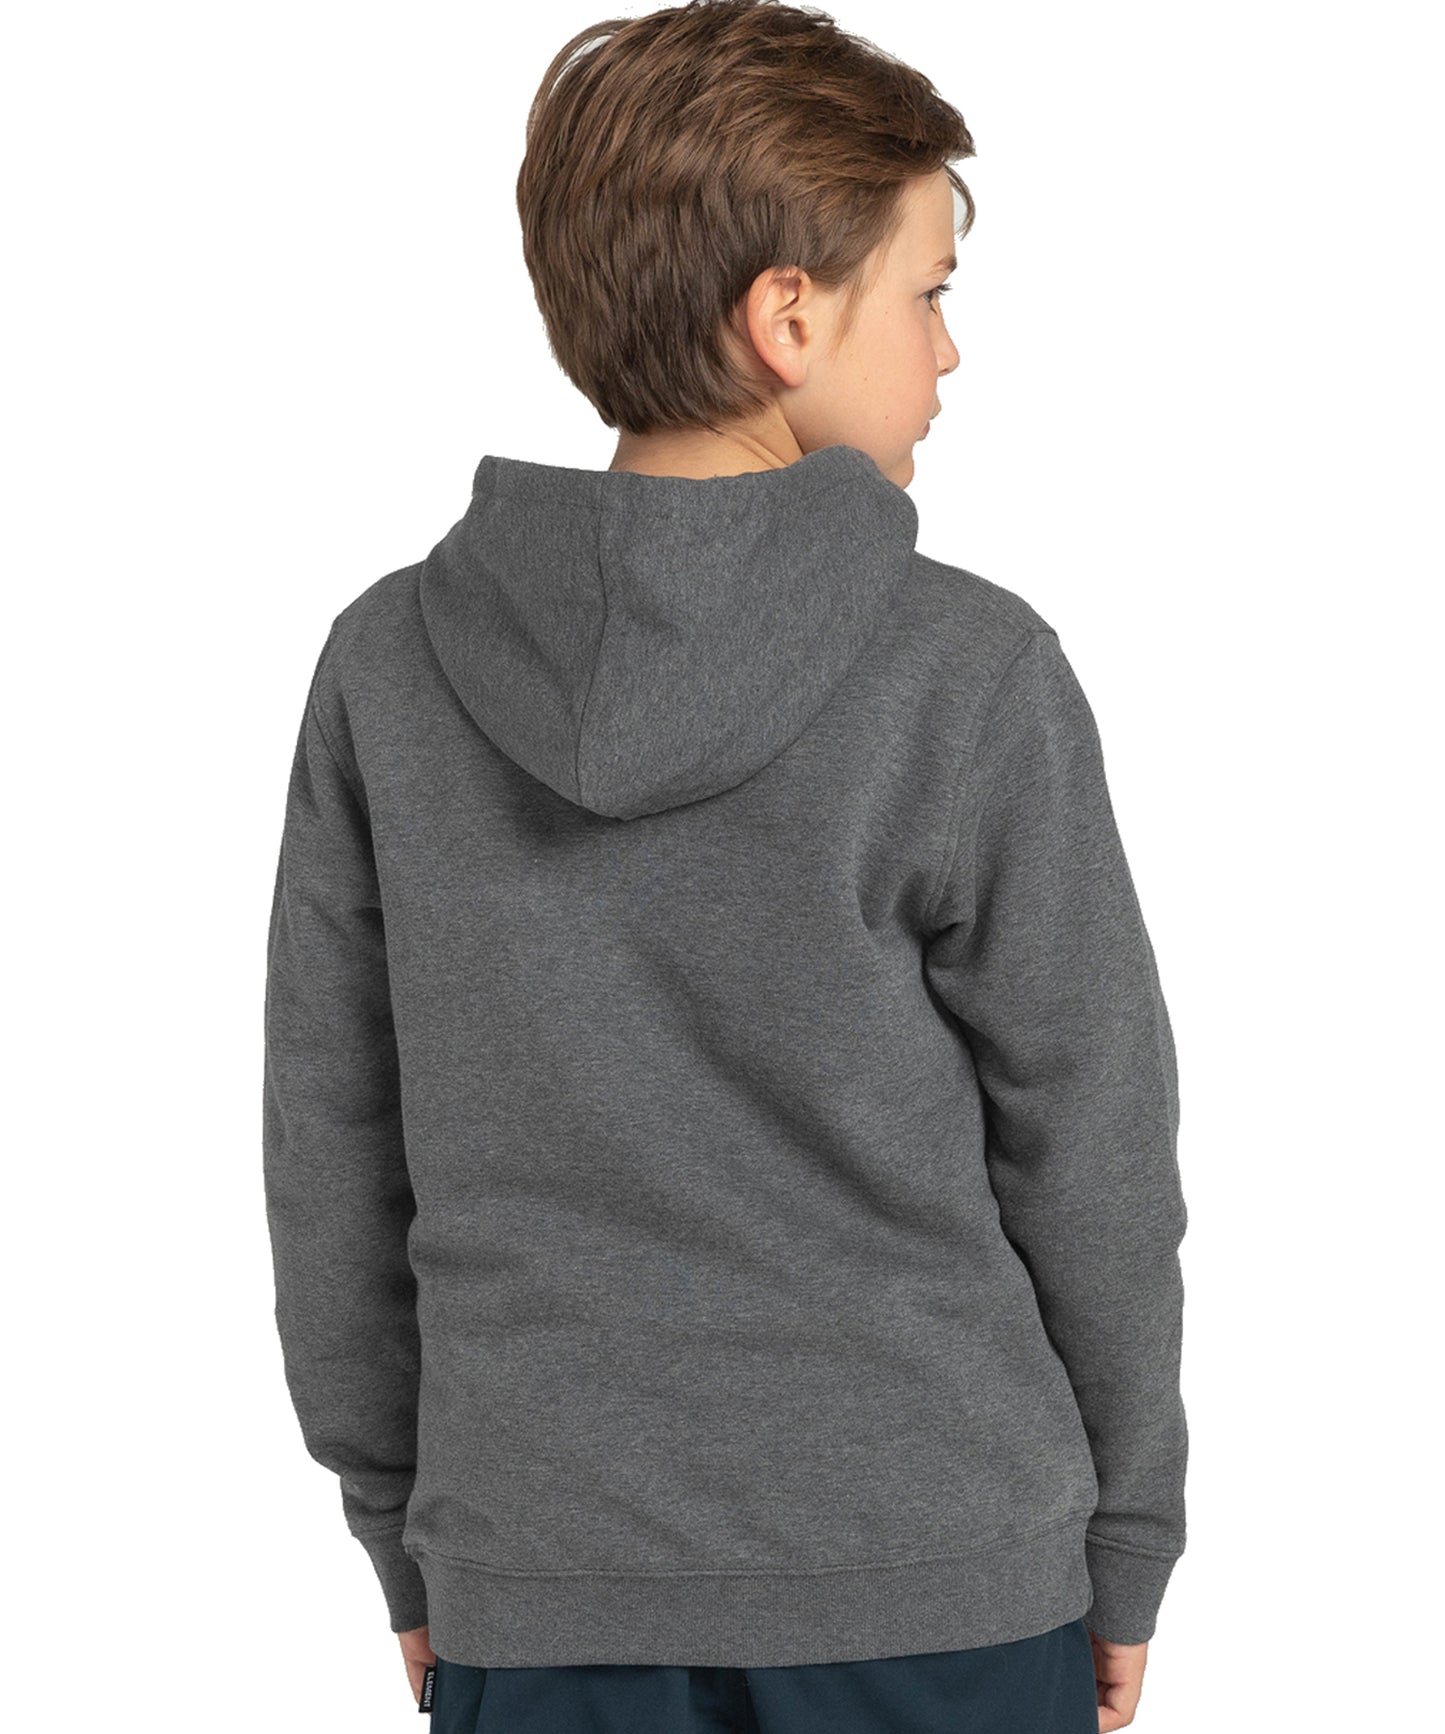 element-vertical-hood-kids-grey-sudadera-niños-algodón-terry frances-logo grande en el pecho.